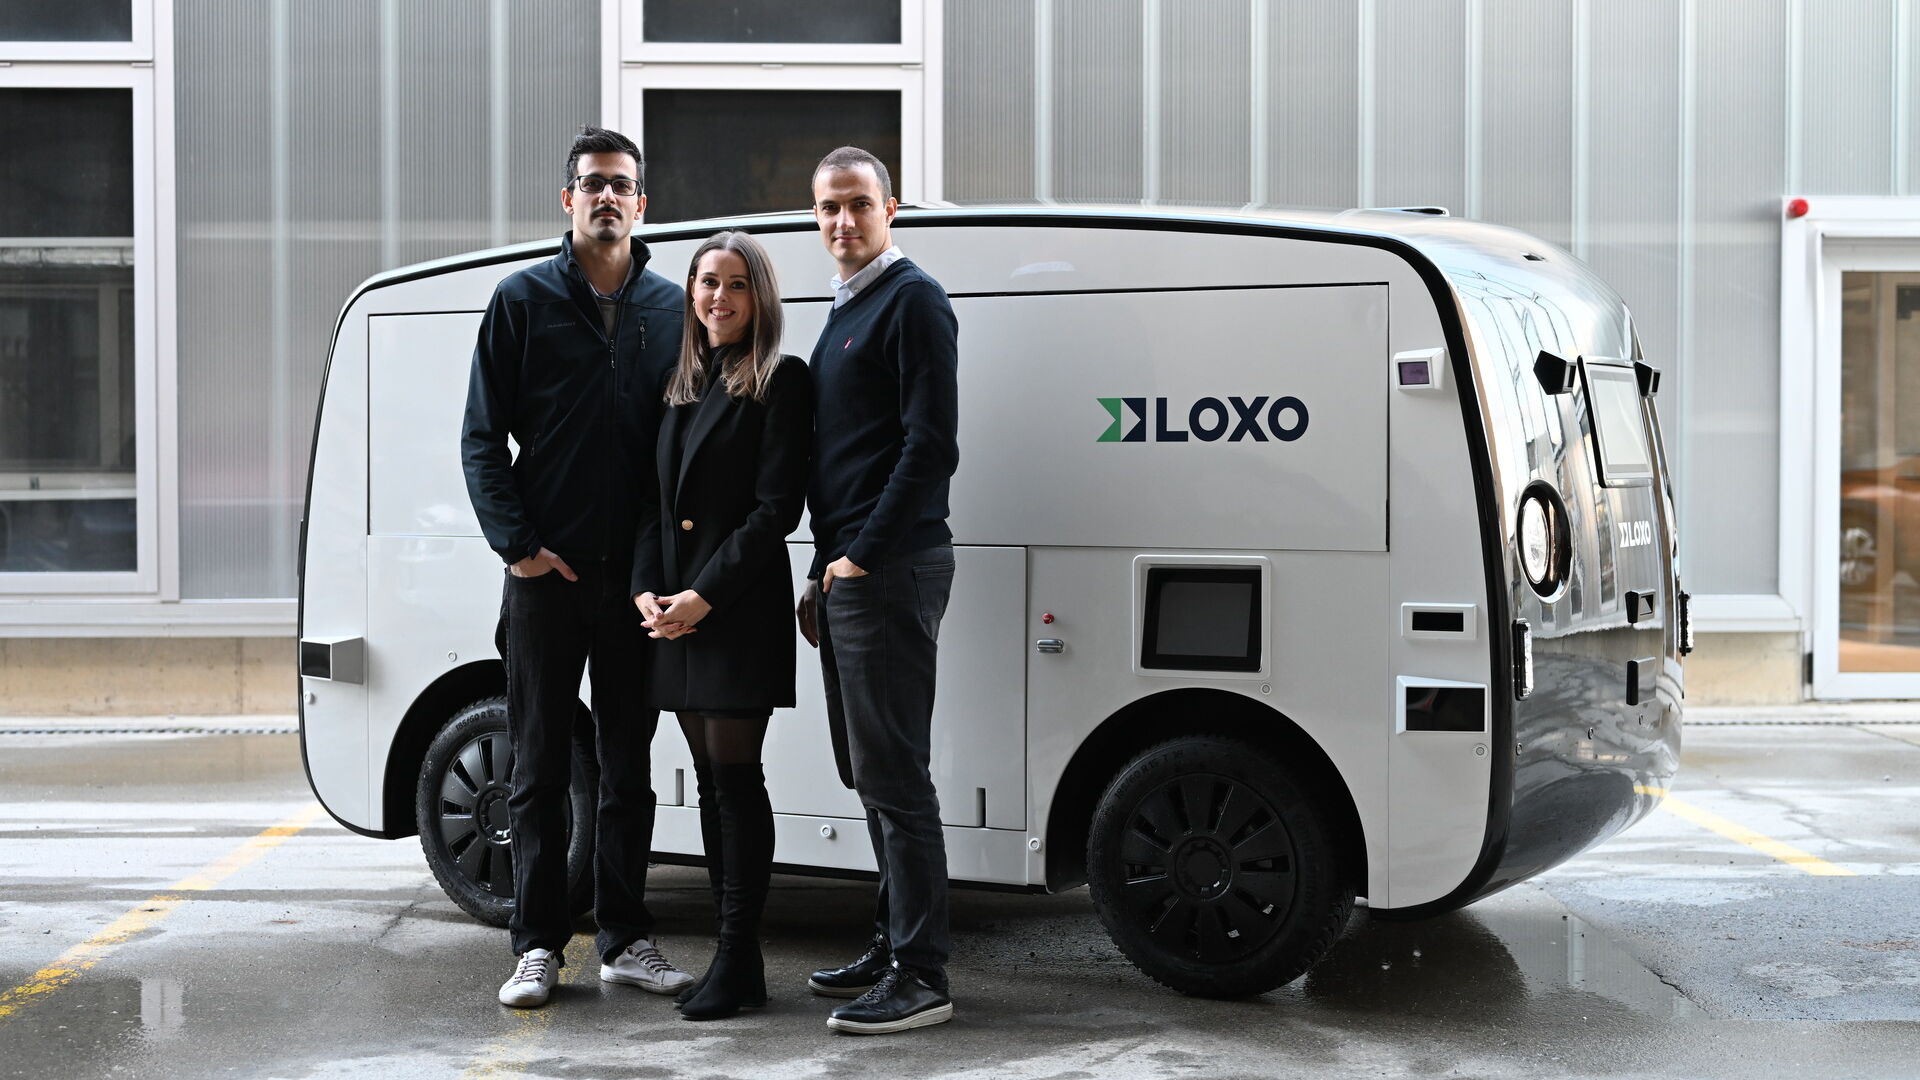 LOXO. Ամին Ամինին, Լարա Ամինի-Ռենցը և Կլաուդիո Պանիցան՝ Բեռնում սկսնակ LOXO-ի հիմնադիրները, կառուցել են Alpha-ն ամբողջությամբ Շվեյցարիայում՝ կարճաժամկետ առաքումների համար ինքնակառավարվող ֆուրգոն։